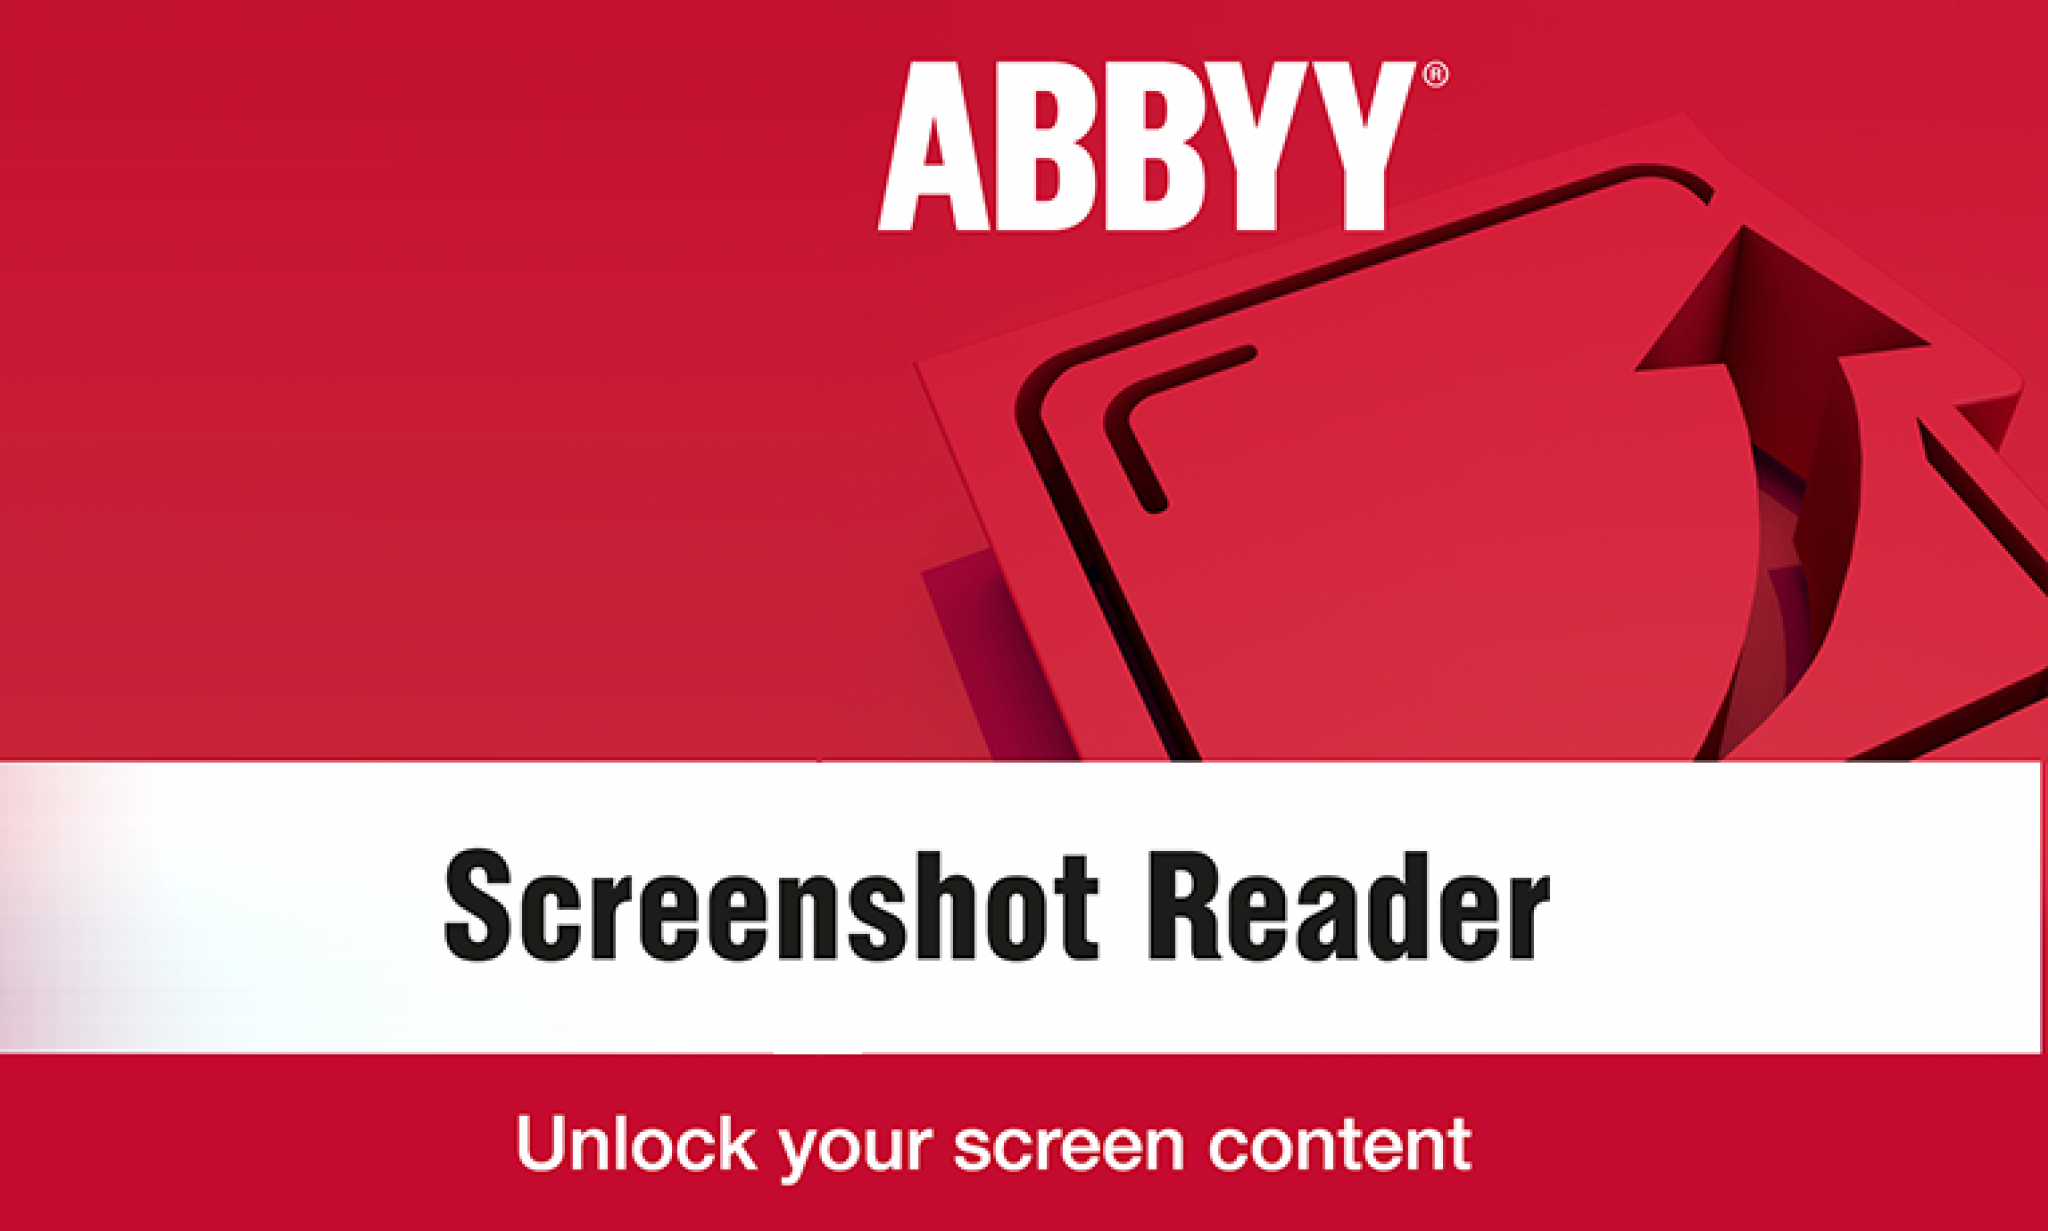 Abbyy screenshot reader — снимки экрана и распознавание текста